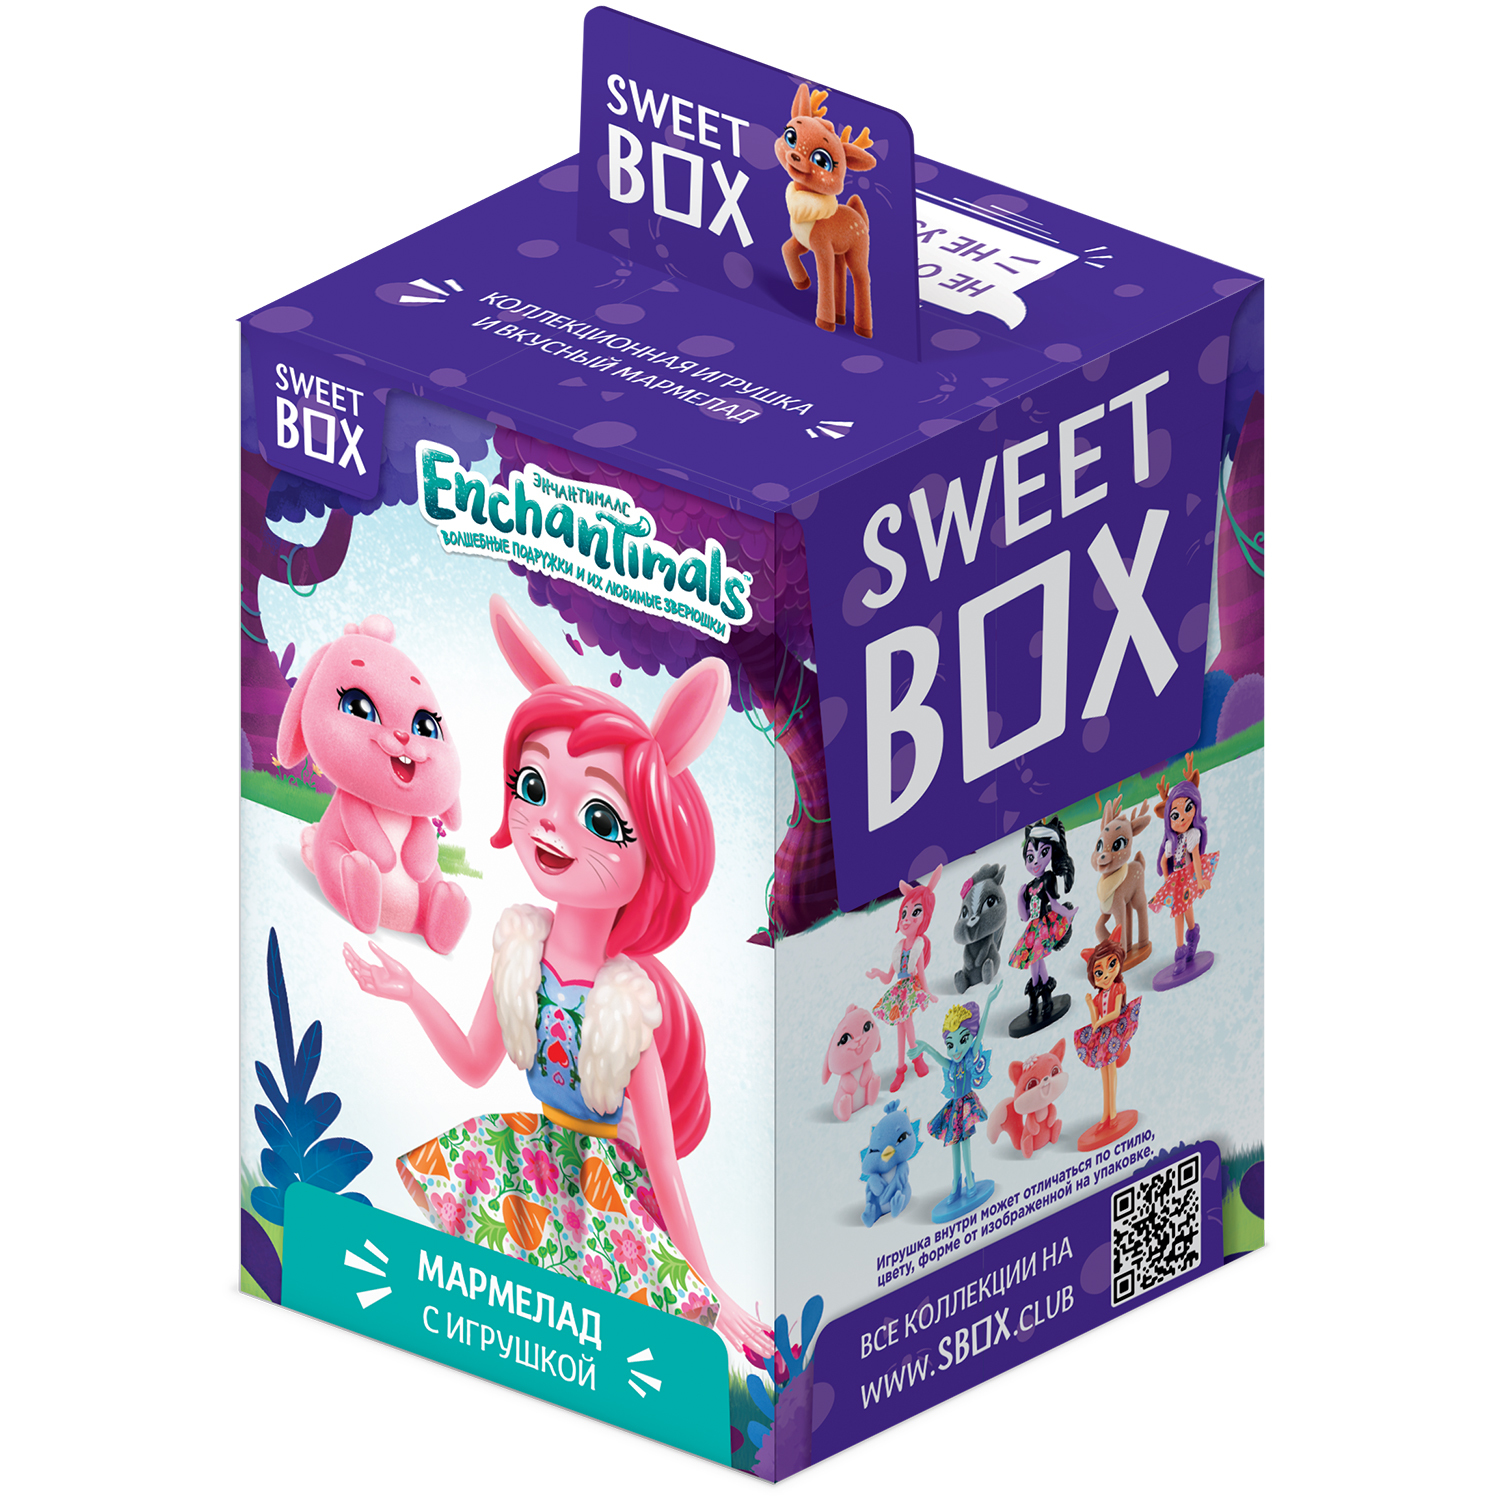 Мармелад Sweet box Enchantimals с игрушкой 10г в непрозрачной упаковке (Сюрприз) - фото 1